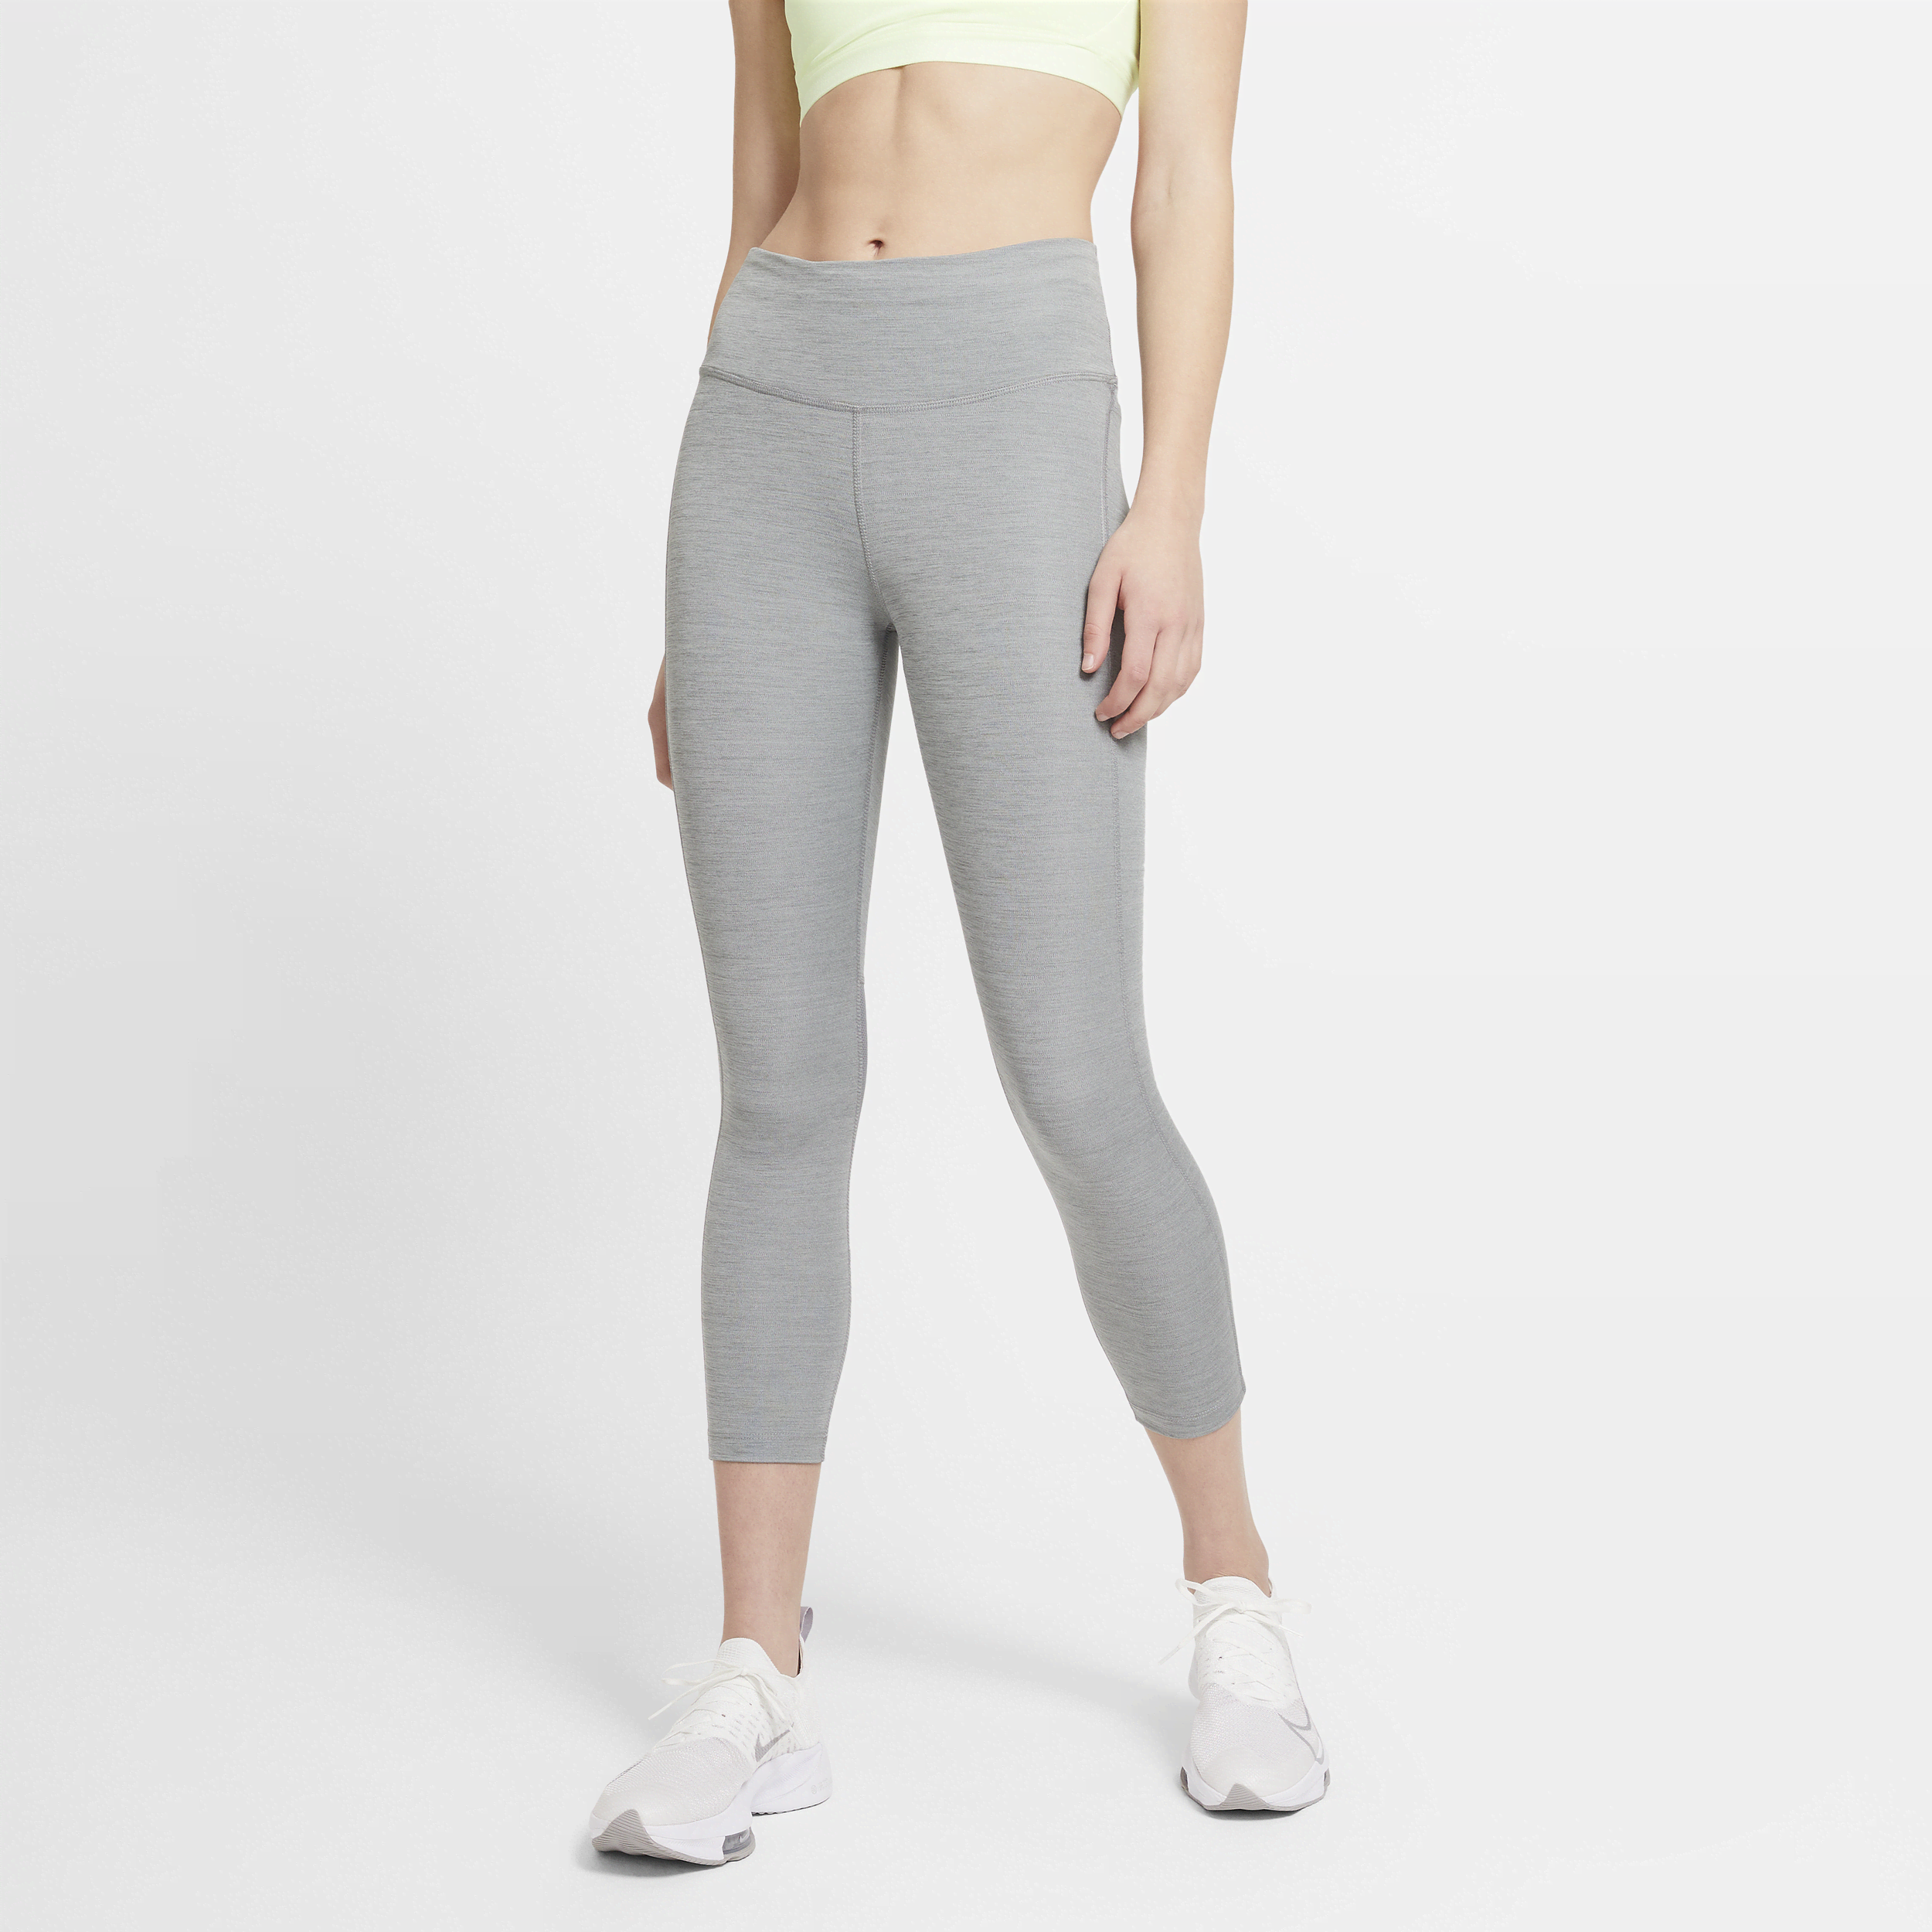 Nike Fast Cropped hardlooplegging met halfhoge taille voor dames - Grijs